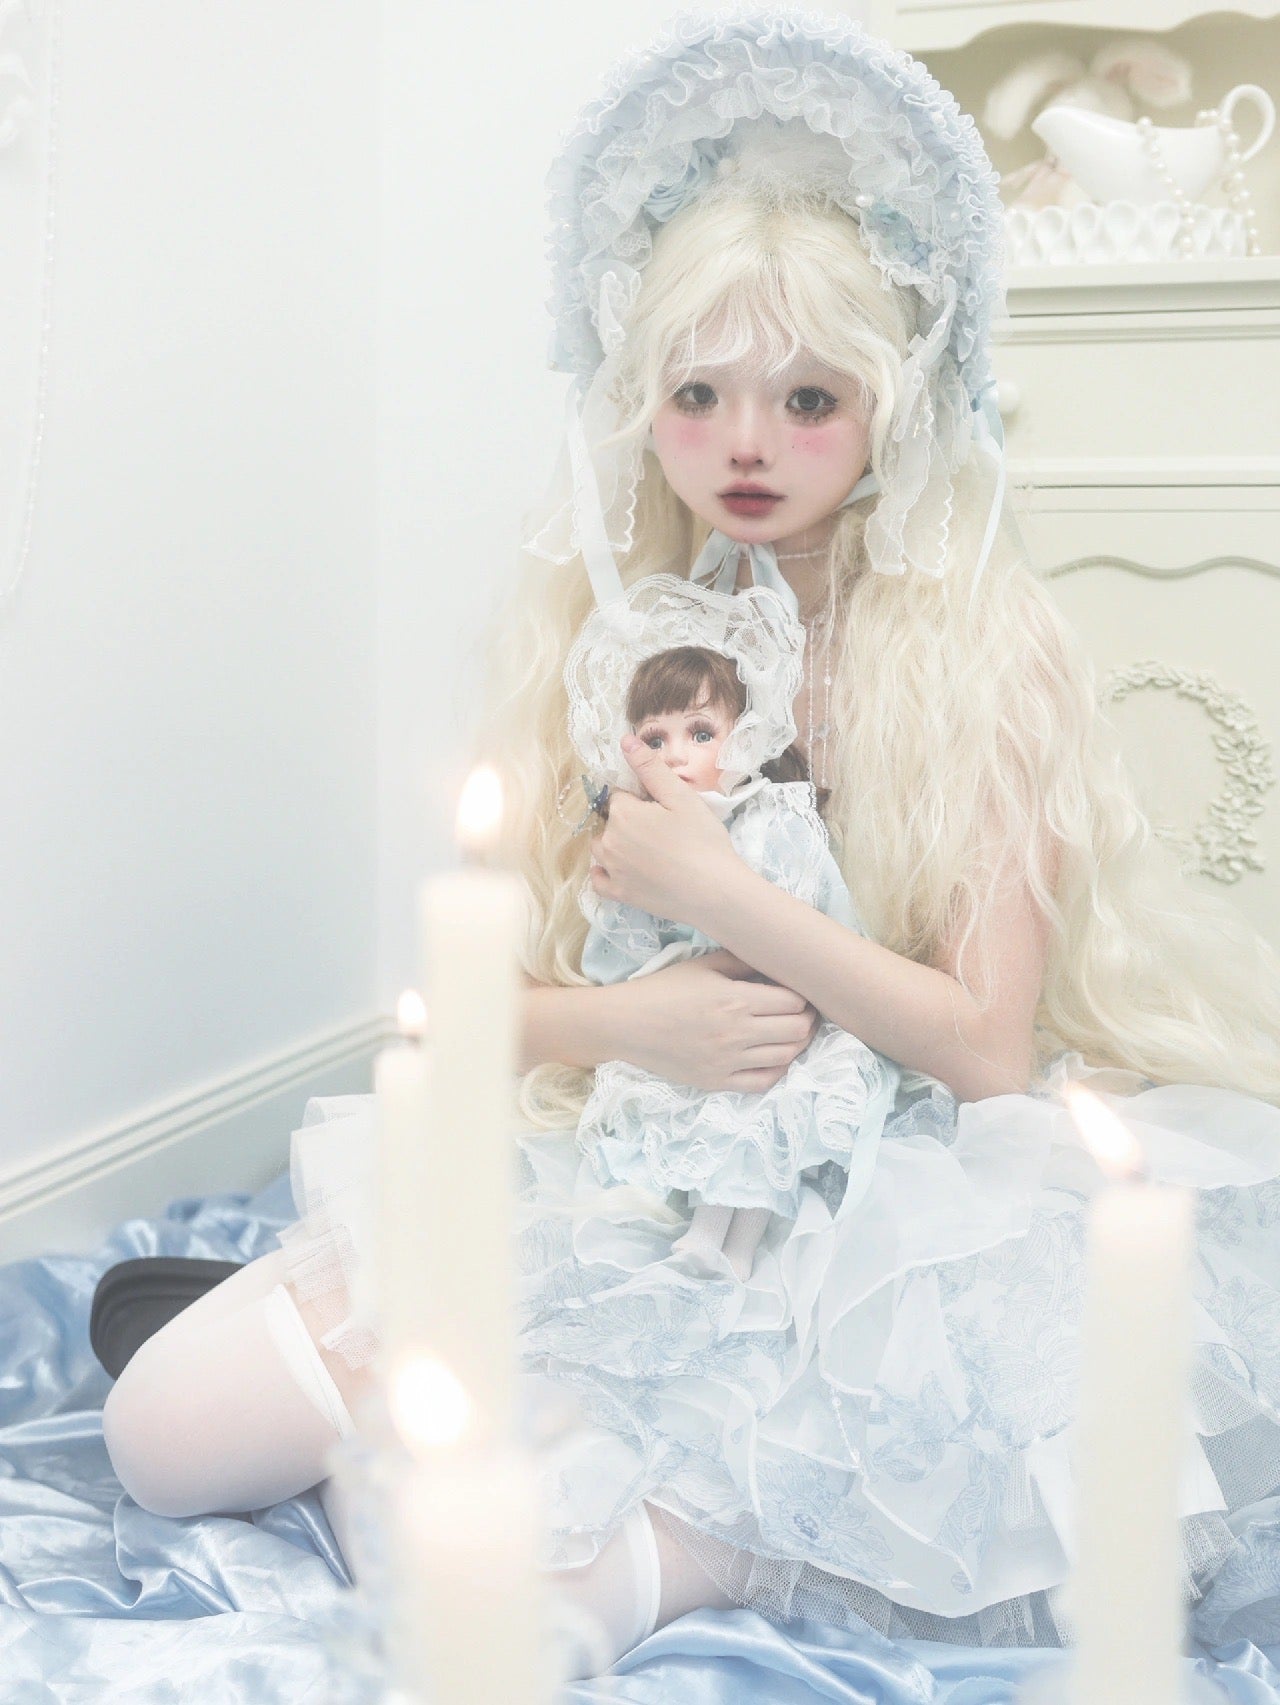 ♡ Фарфоровая кукла ♡ - Платье принцессы